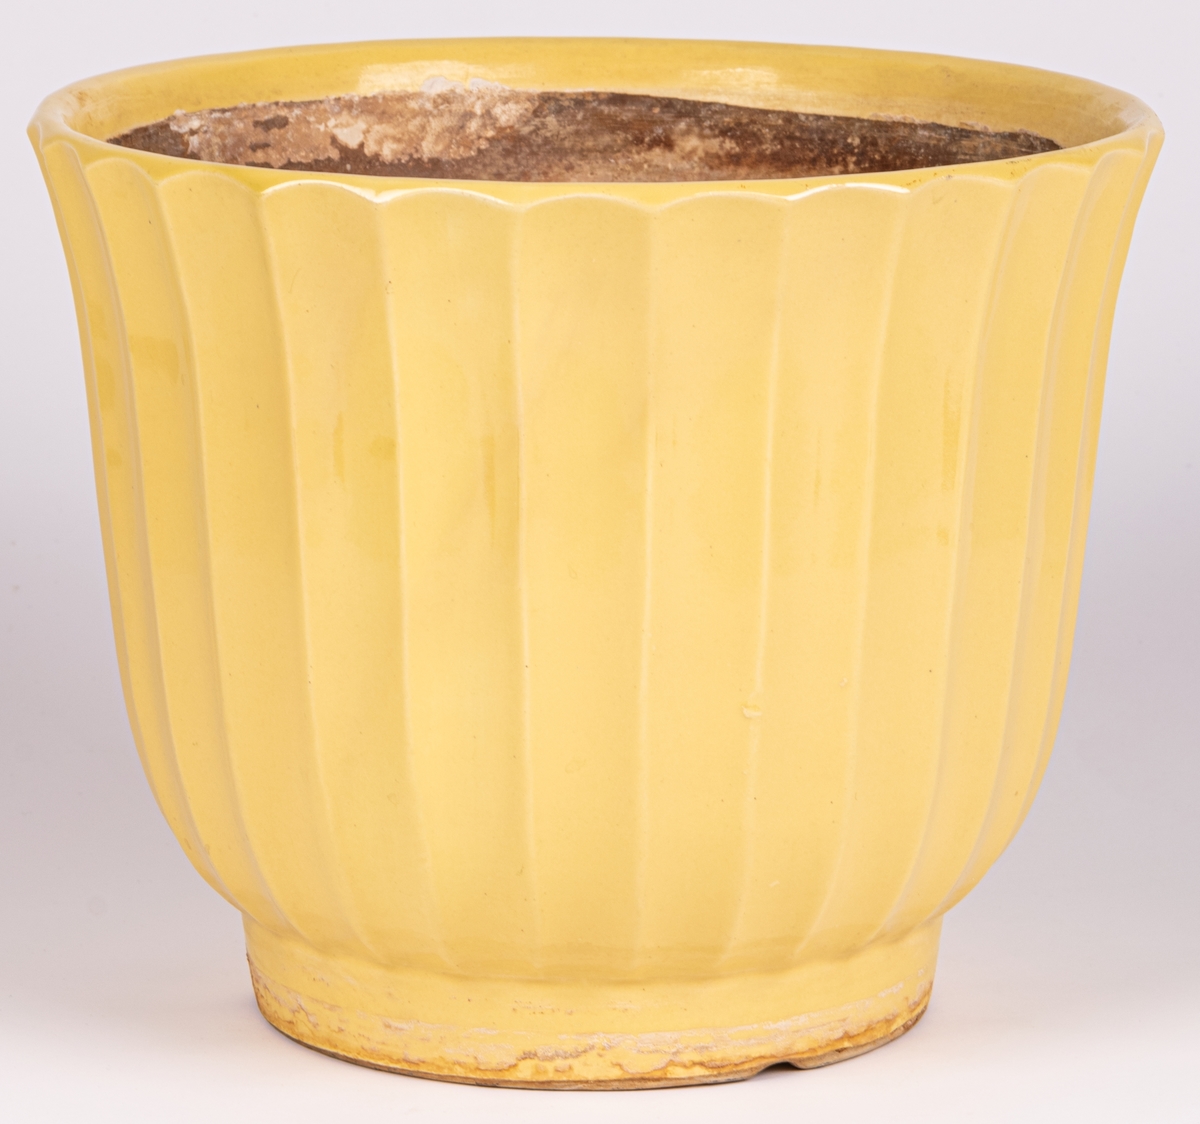 Blomkrukan Tellus i gul glasyr, tillverkad vid Bo Fajans, formgivare Ewald Dahlskog. Märkt Tellus 10 på undersidan vilket betyder storlek 10 (av 11).